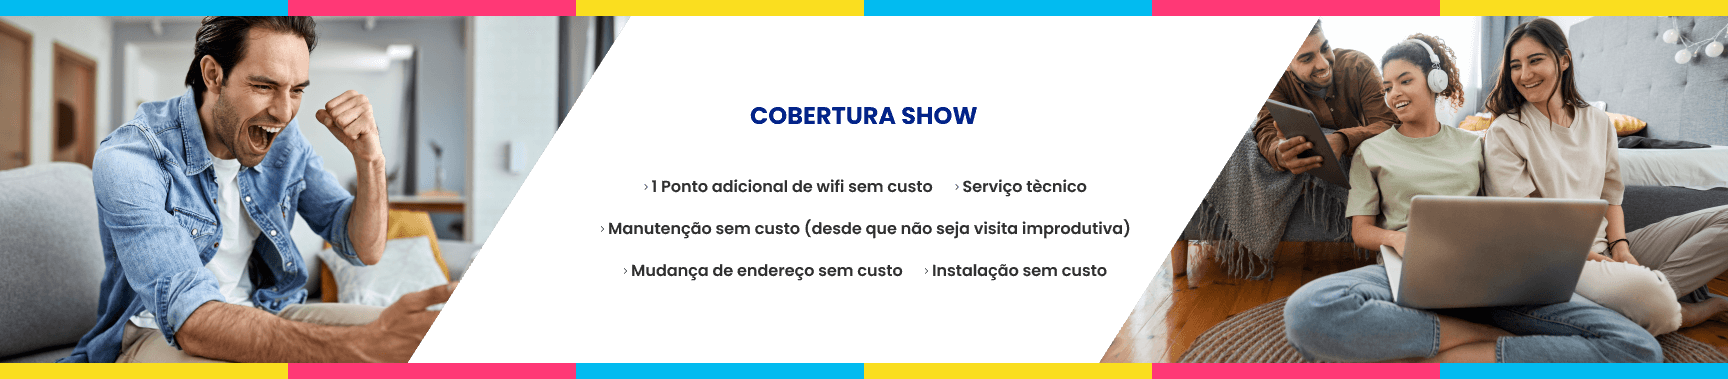 Cobertura Show (1)